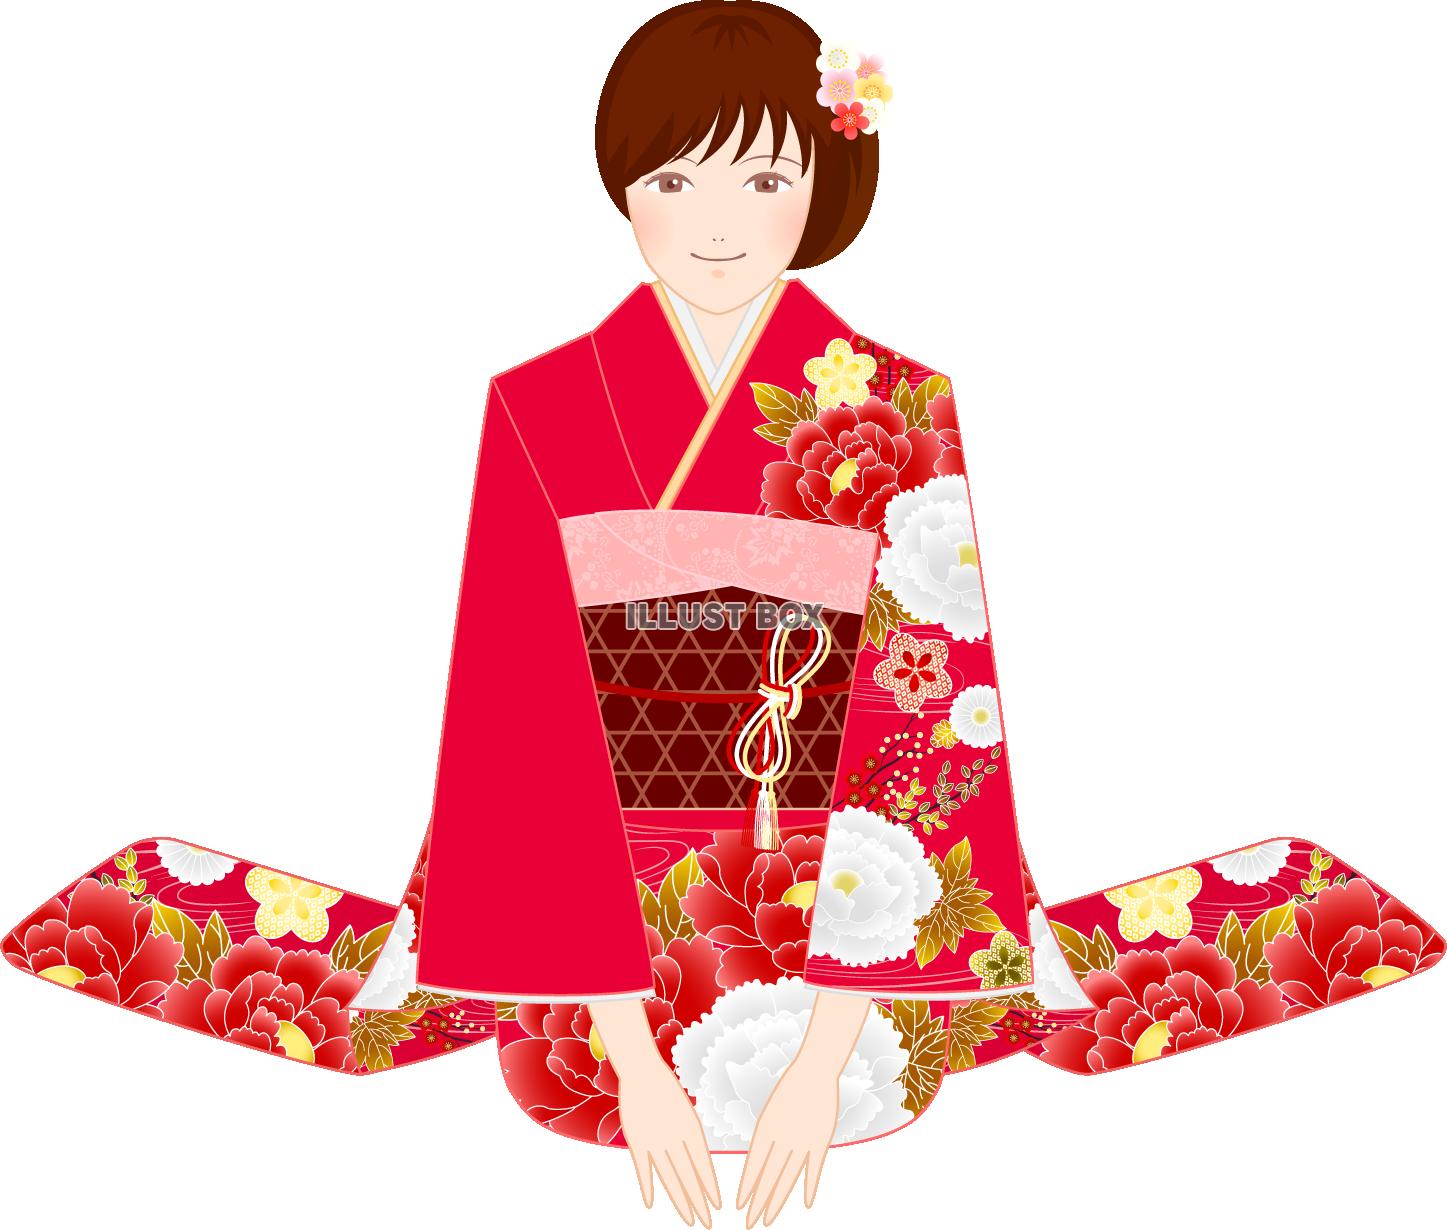 Japan Image 和服 イラスト フリー